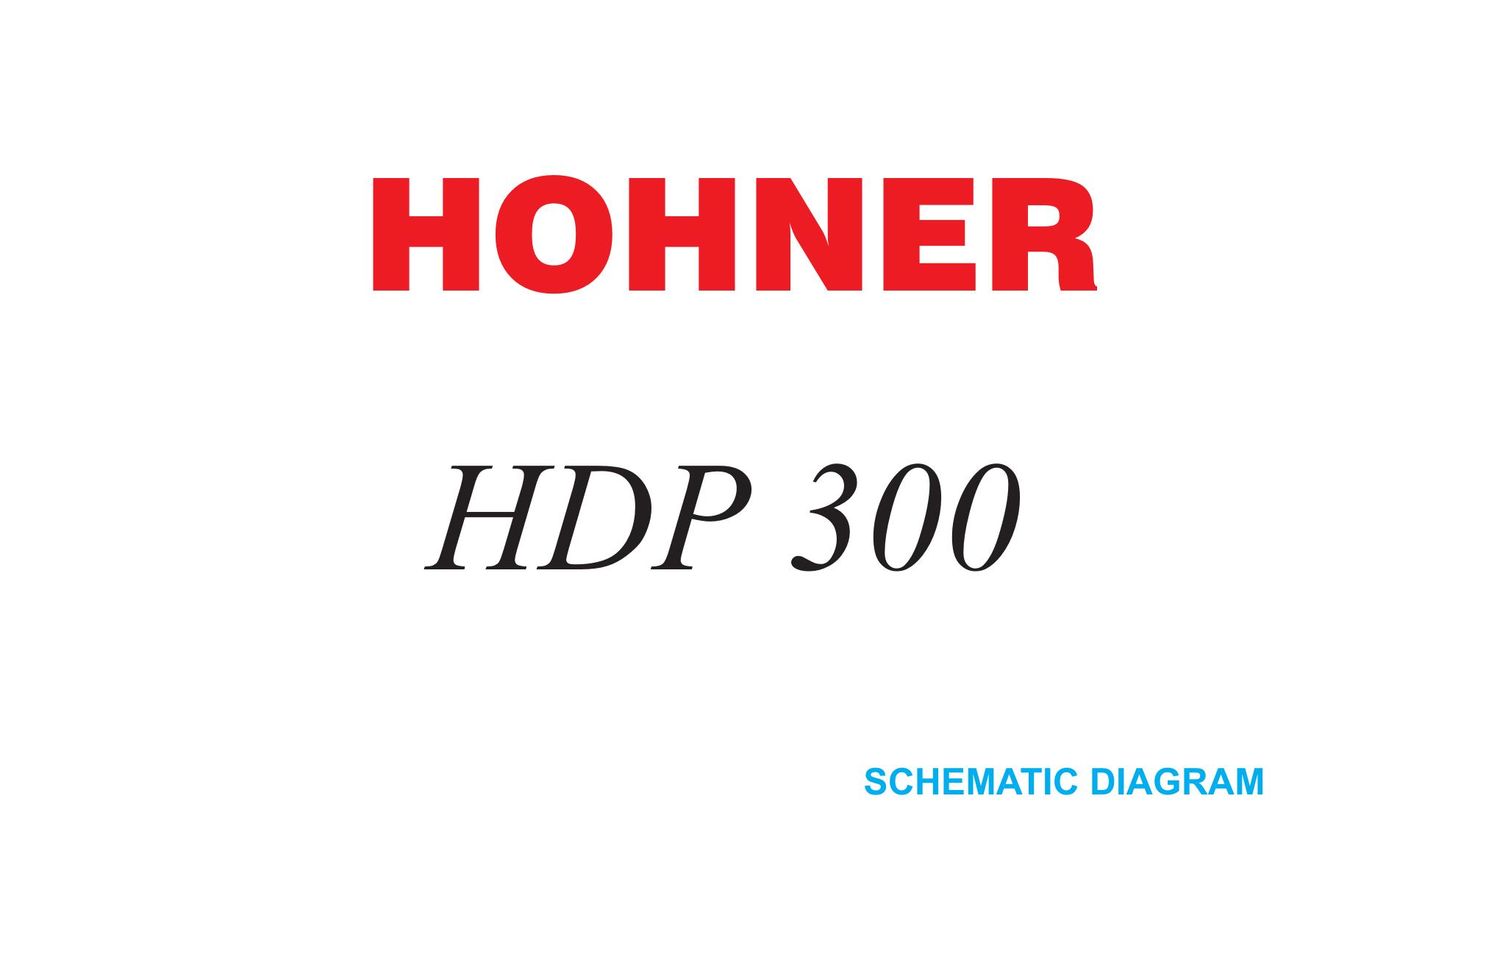 hohner hdp 300 schematics